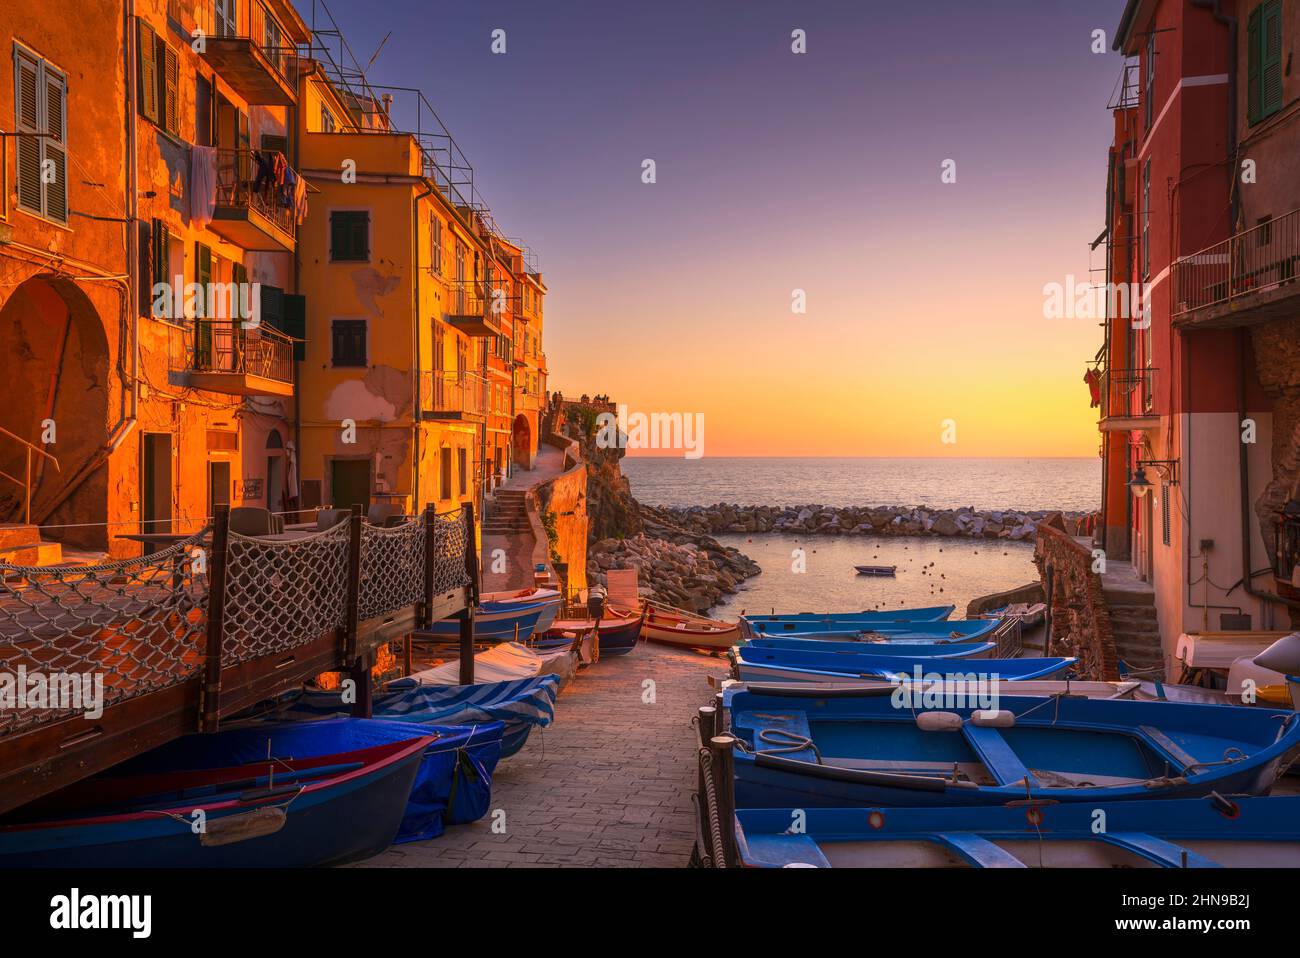 Riomaggiore pueblo de la calle, los barcos y el mar en el atardecer, Cinque Terre Parque Nacional, región de Liguria, Italia, Europa. Foto de stock